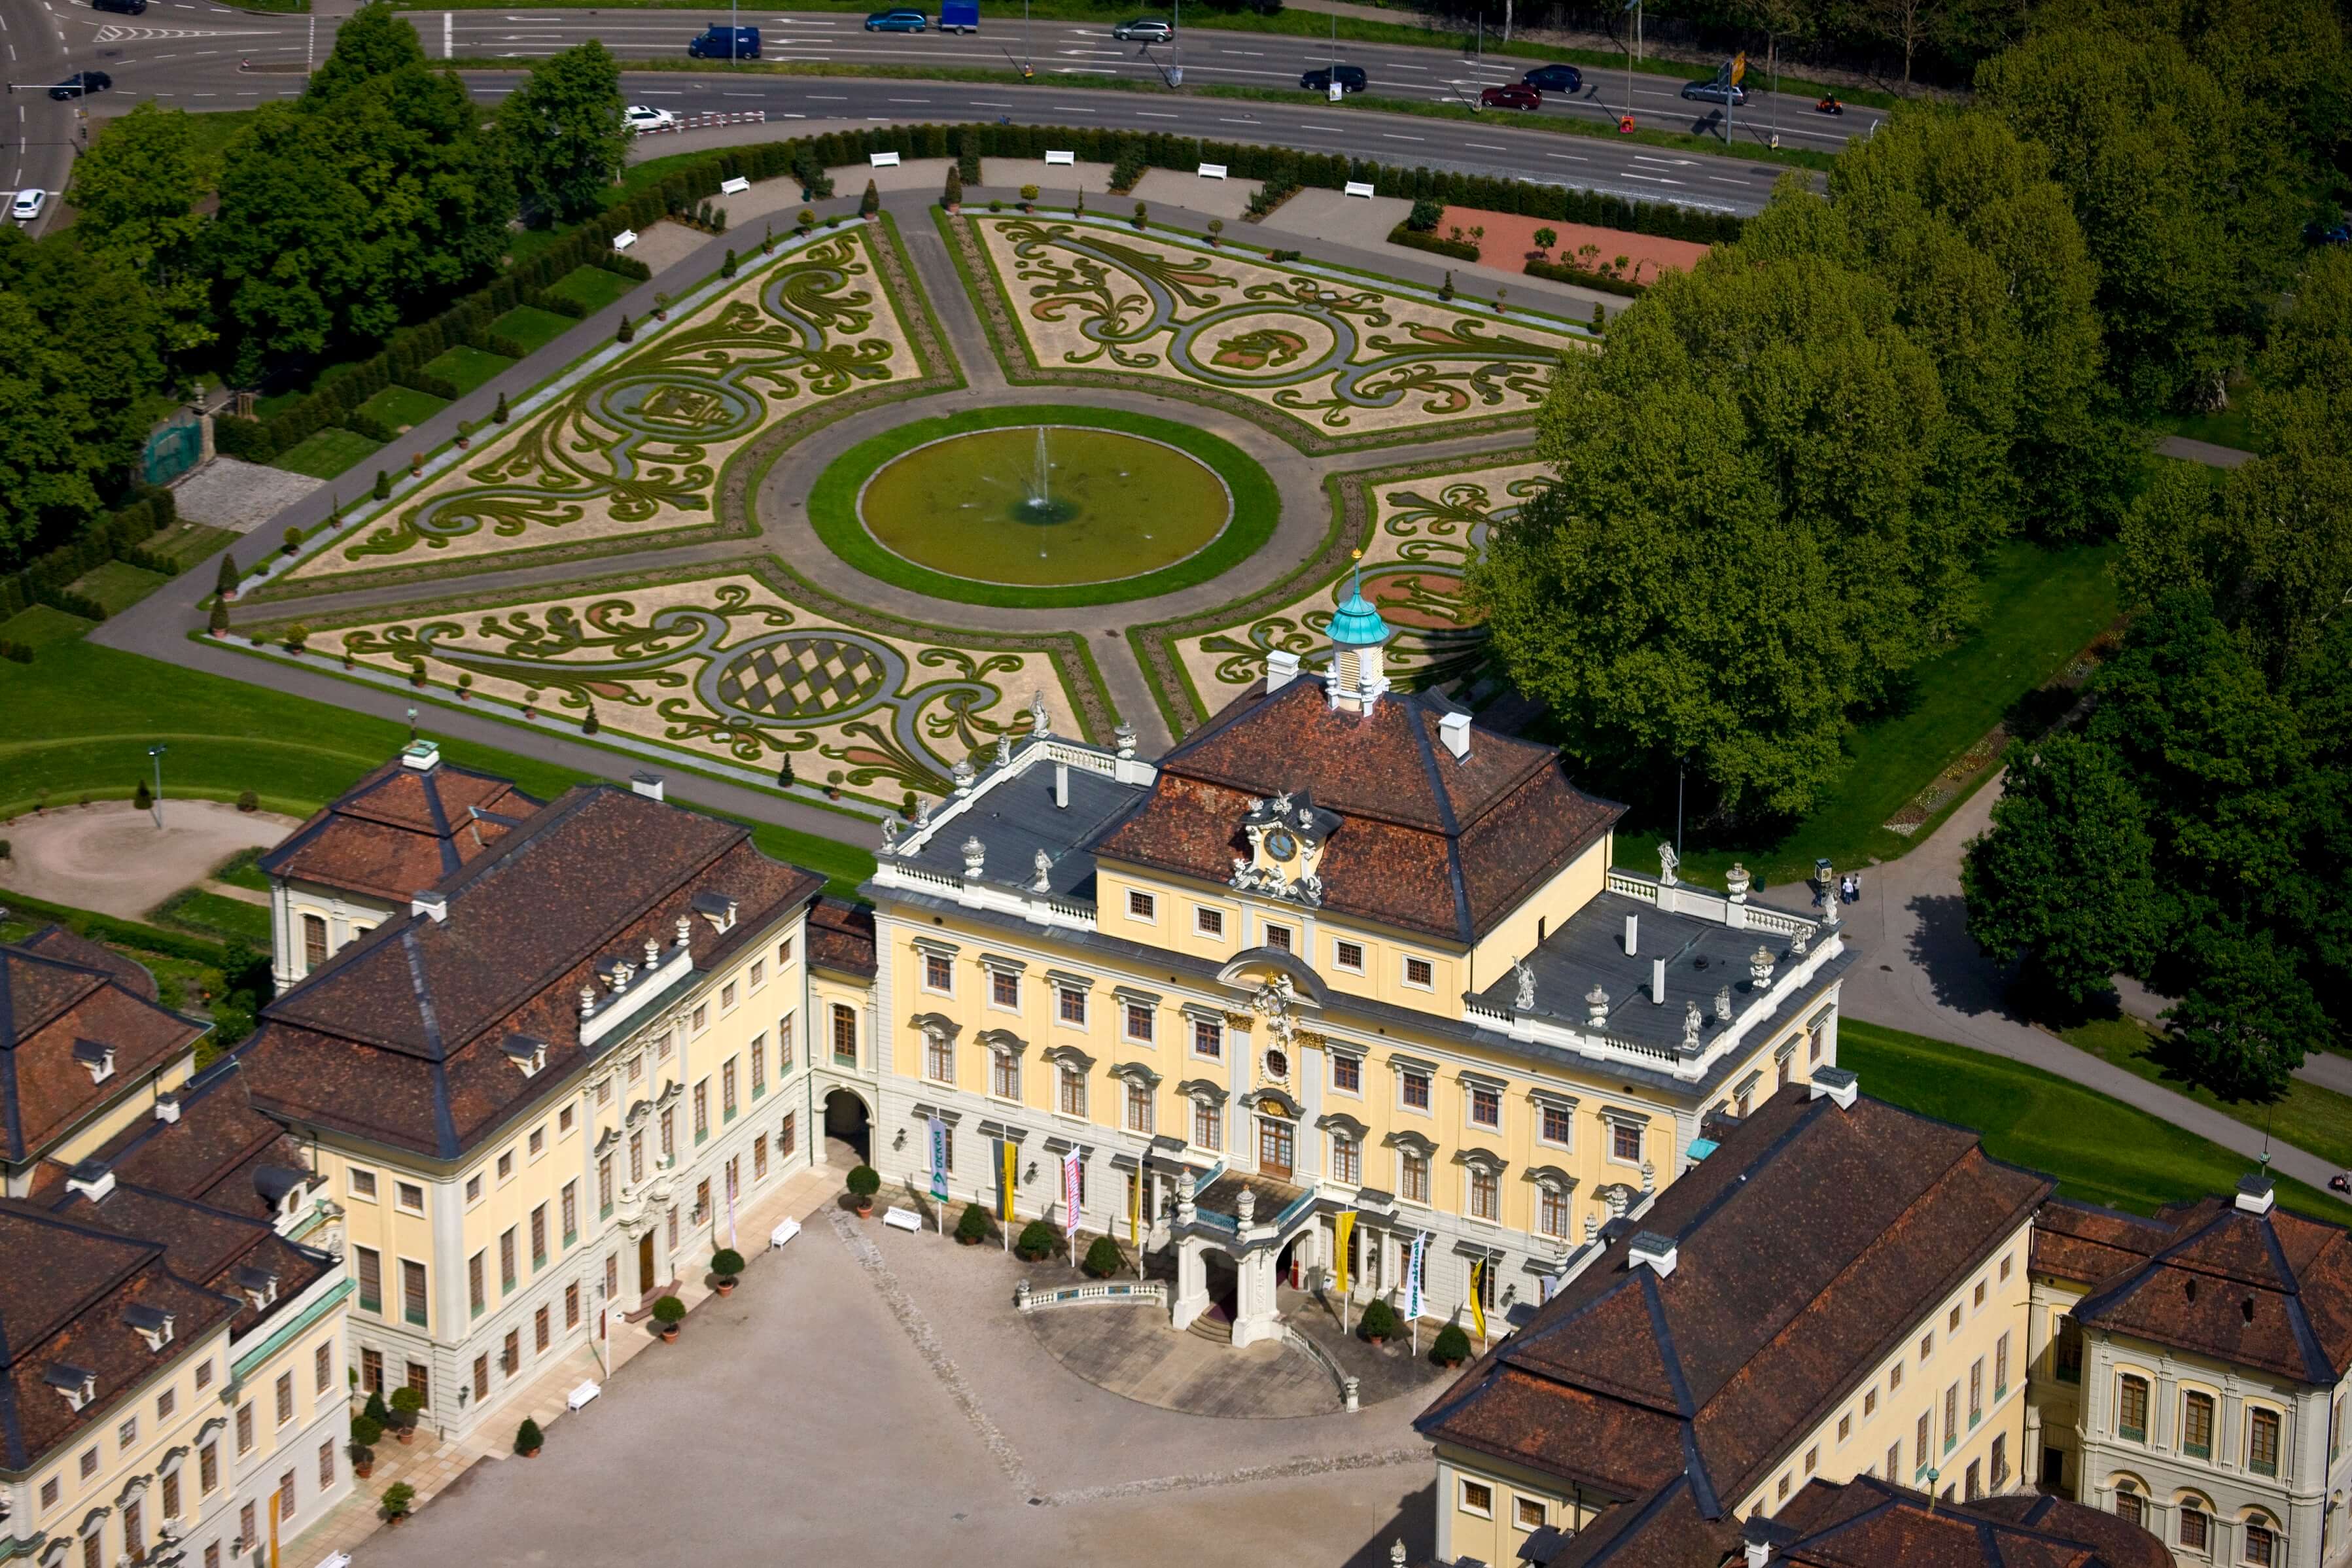 Cung điện Ludwigsburg đức